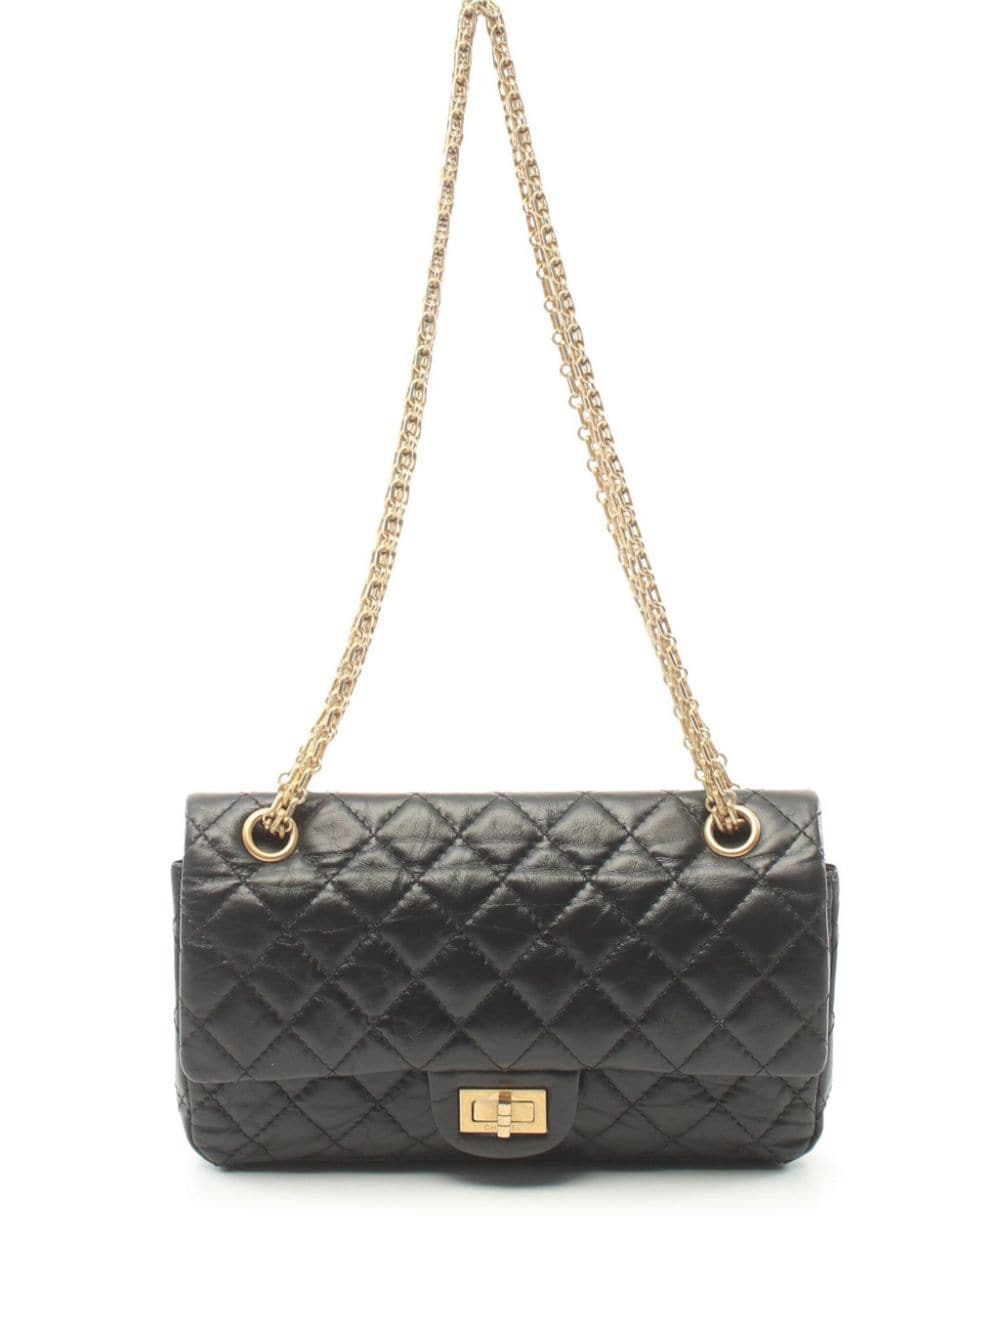 Pre-owned Chanel 2019 2.55 Shoulder Bag In Black